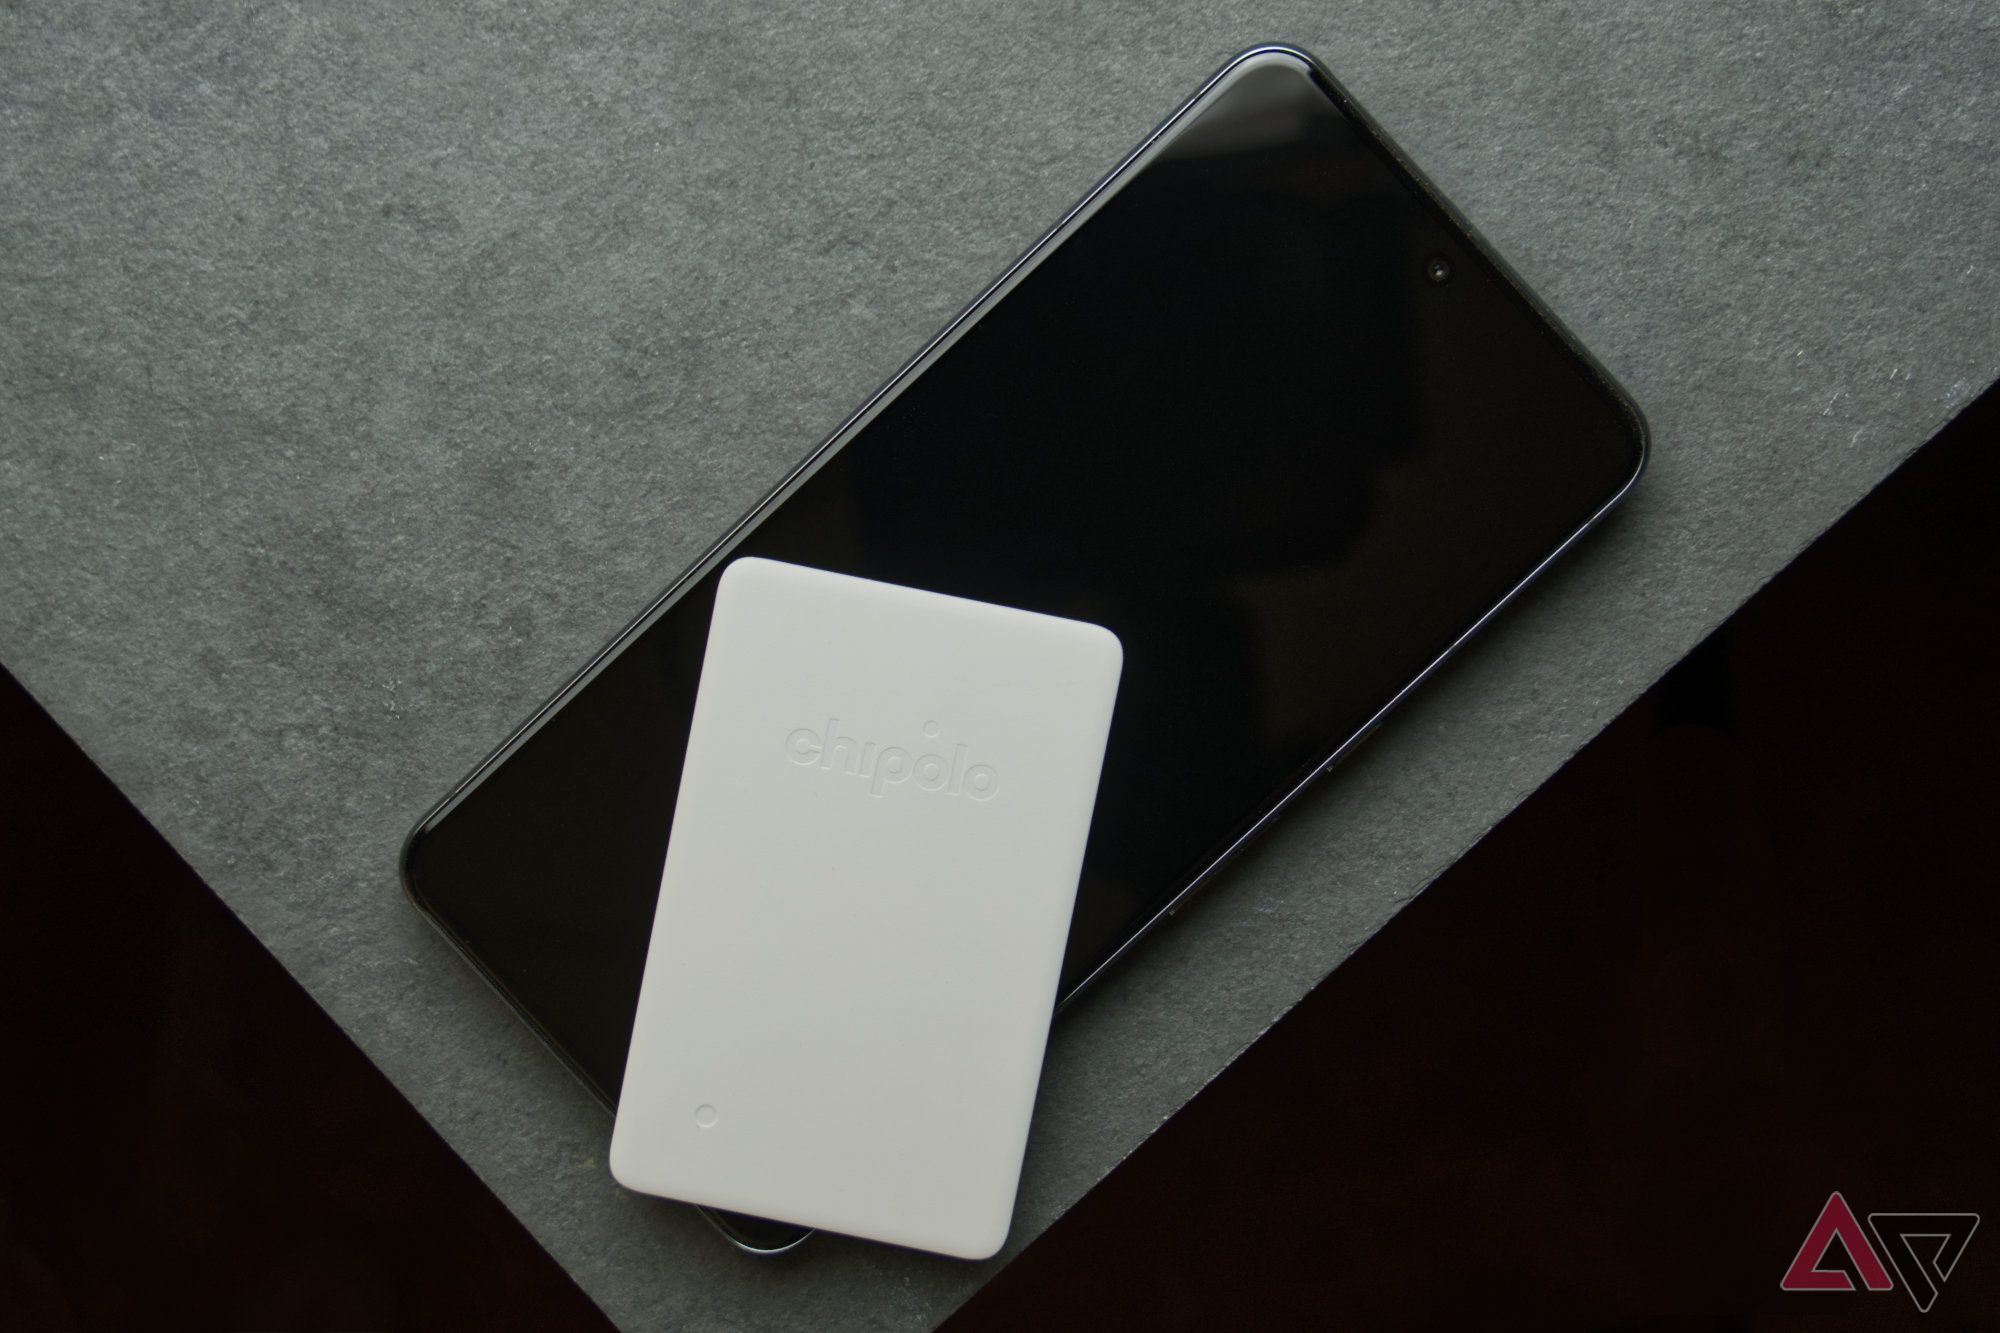 Chipolo CARD Point em um smartphone apoiado em um ladrilho cinza